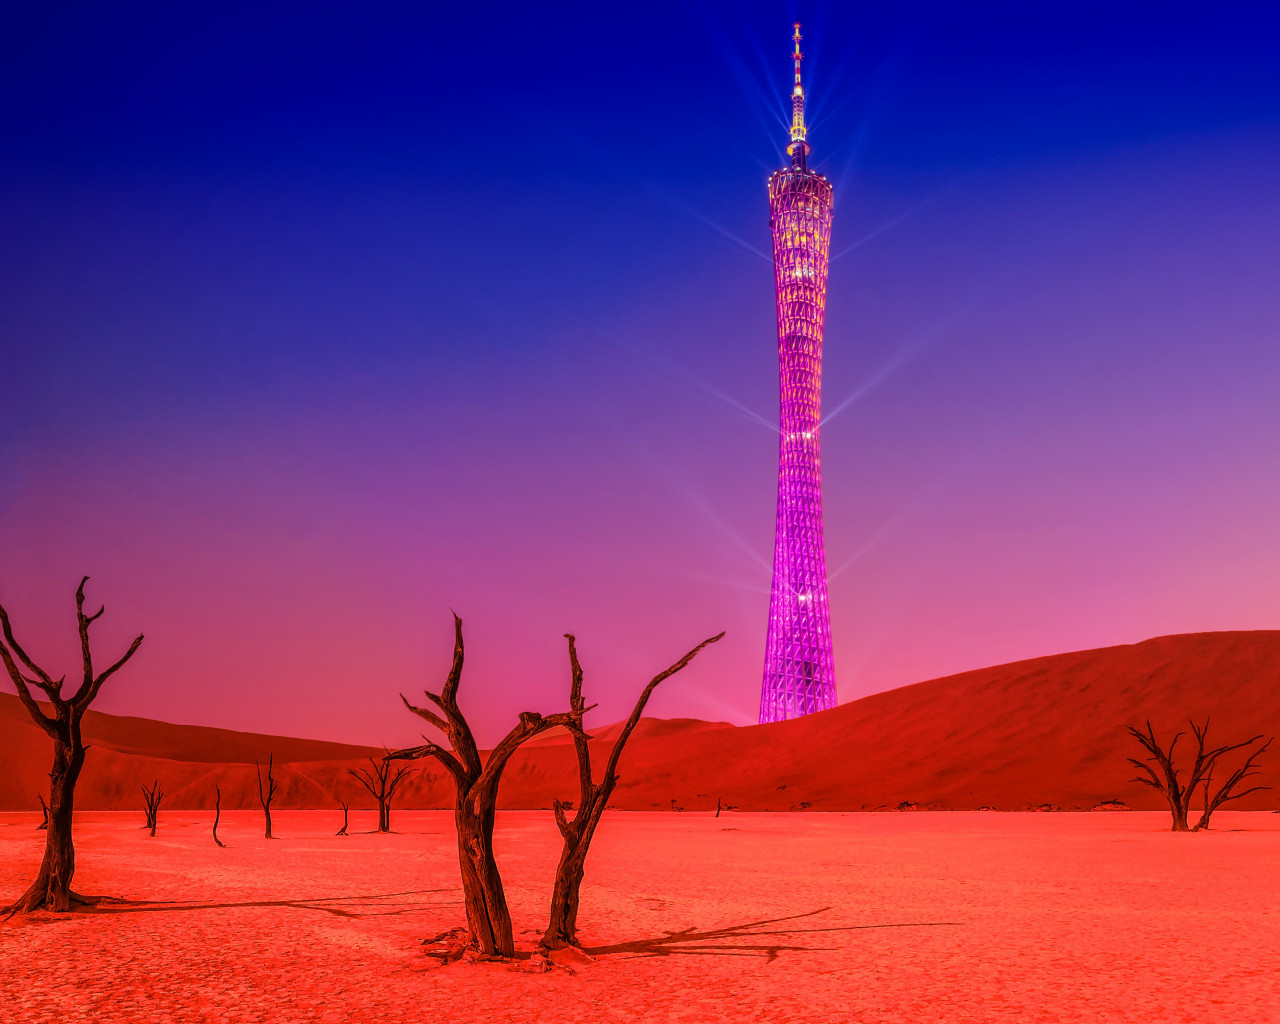 Wieża widziana z pustyni